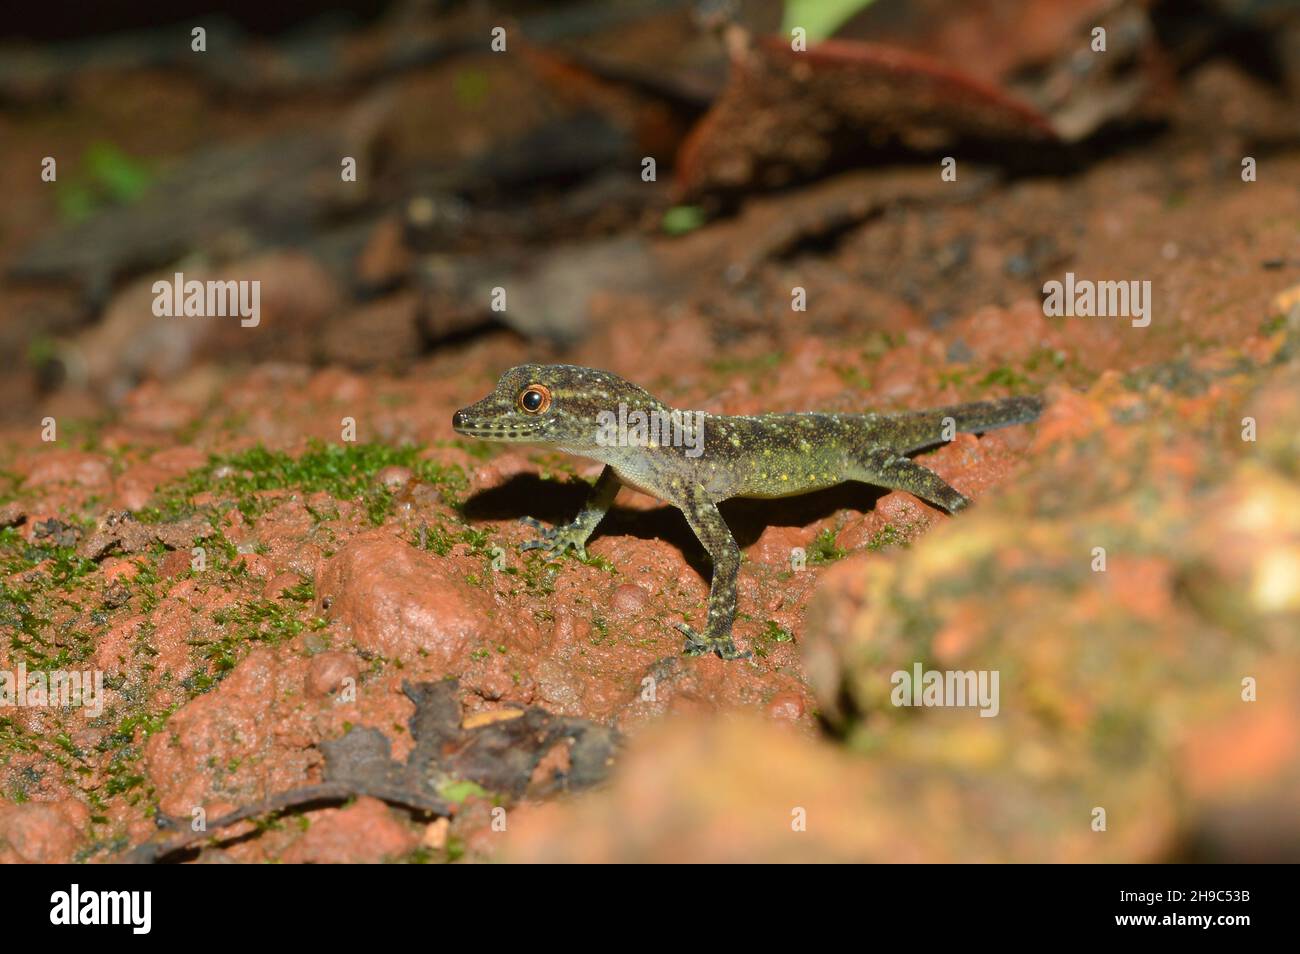 Gecko de jour à ventre jaune, Cnemaspis flaviventralis, Amboli, Maharashtra, Inde.Nouvelle espèce de gecko des Ghats occidentaux de Maharashtra, Inde. Banque D'Images